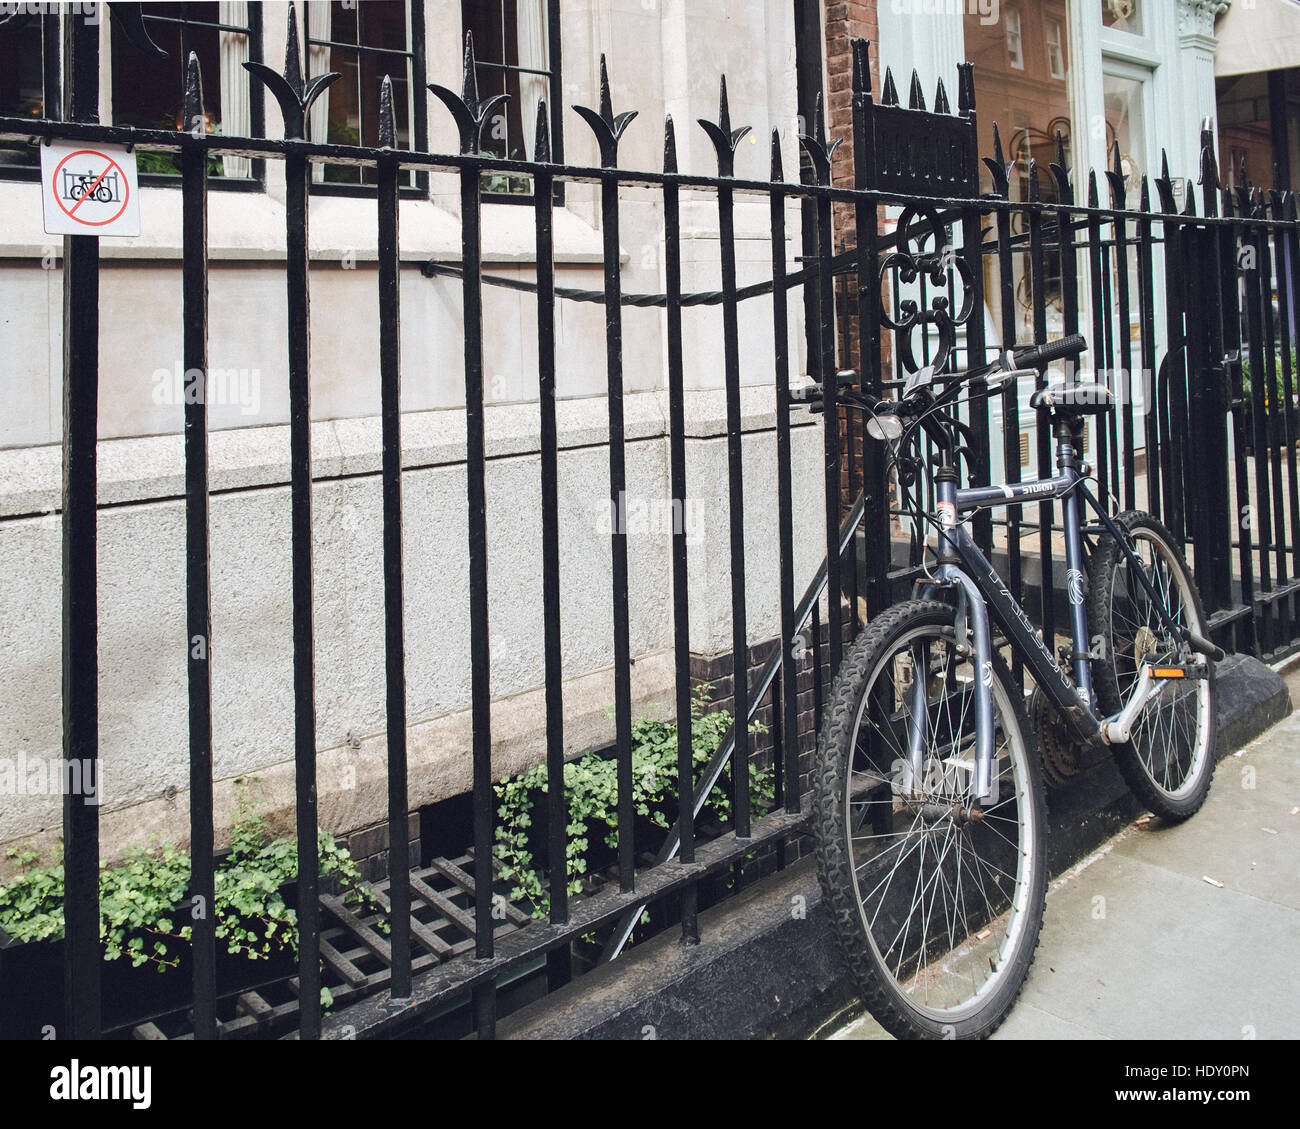 Fahrrad angekettet an Geländern, wo ein "Fahrrad verboten" Schild angezeigt wird. Stockfoto